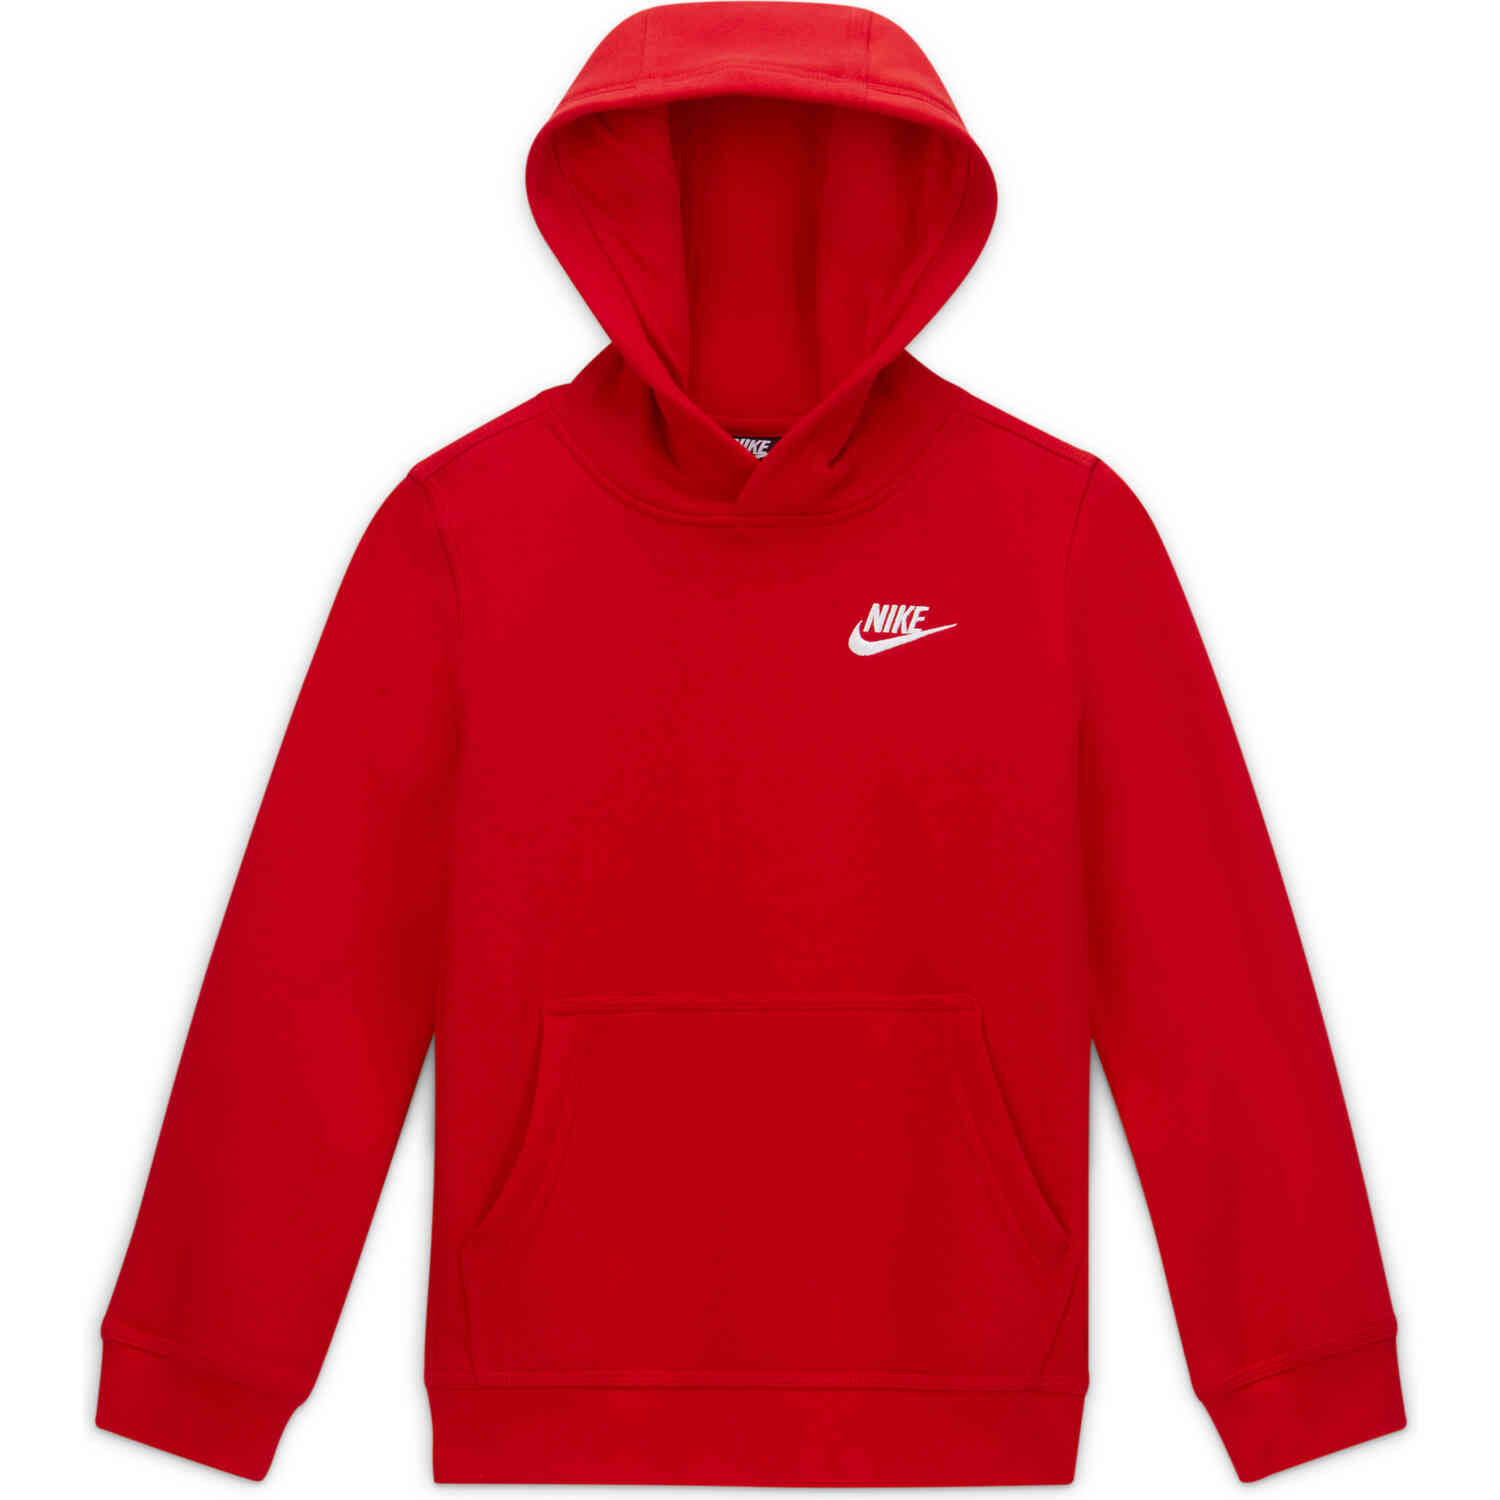 Kids Nike Sportswear Pullover Hoodie - University Red - SoccerPro